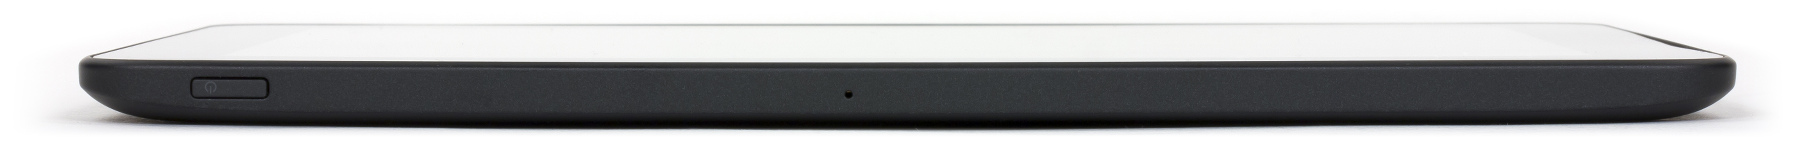 Микрофон планшета HP Omni 10